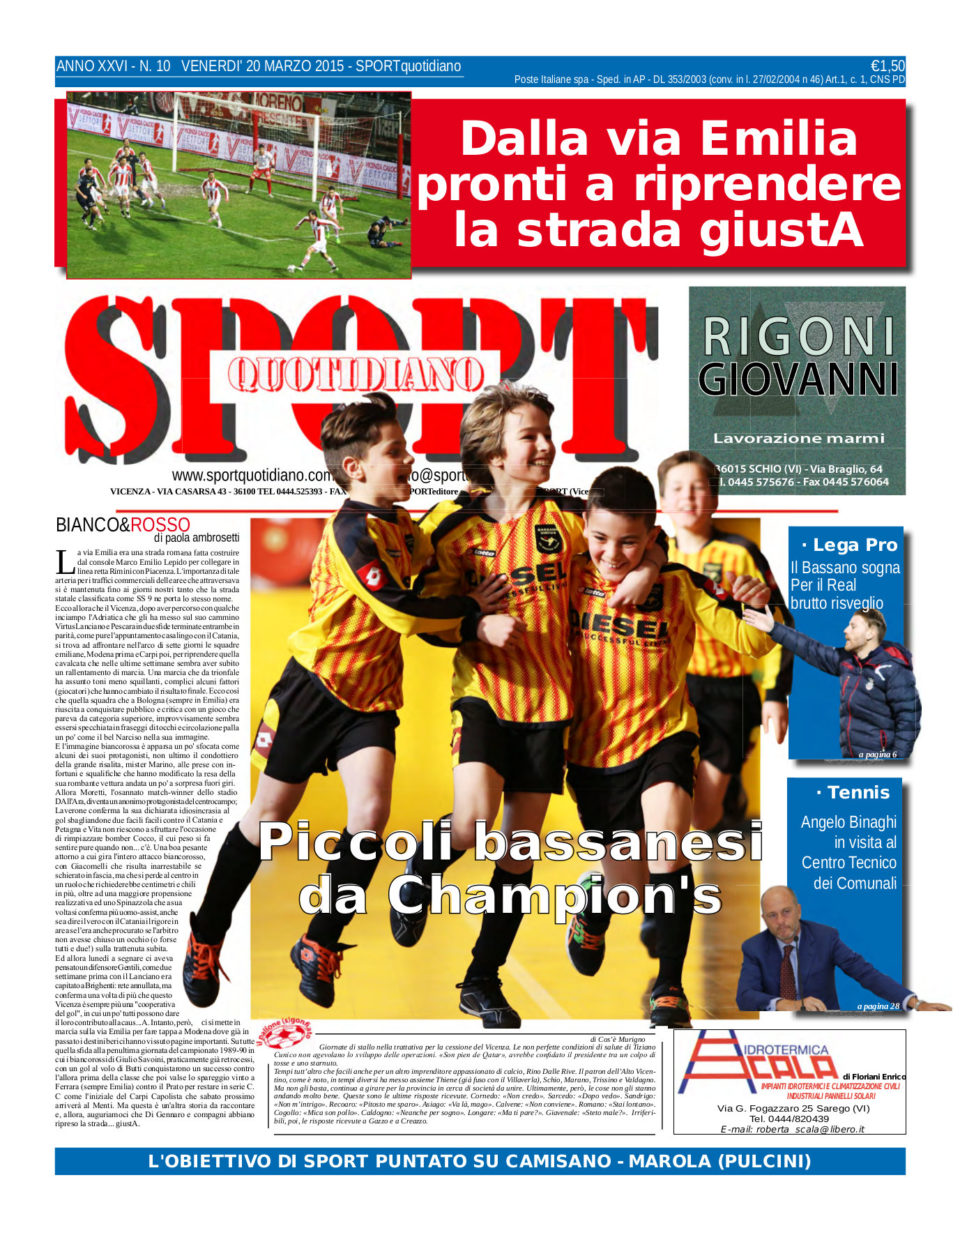 La prima pagina di Sport Quotidiano in edicola venerdì 20 marzo 2015